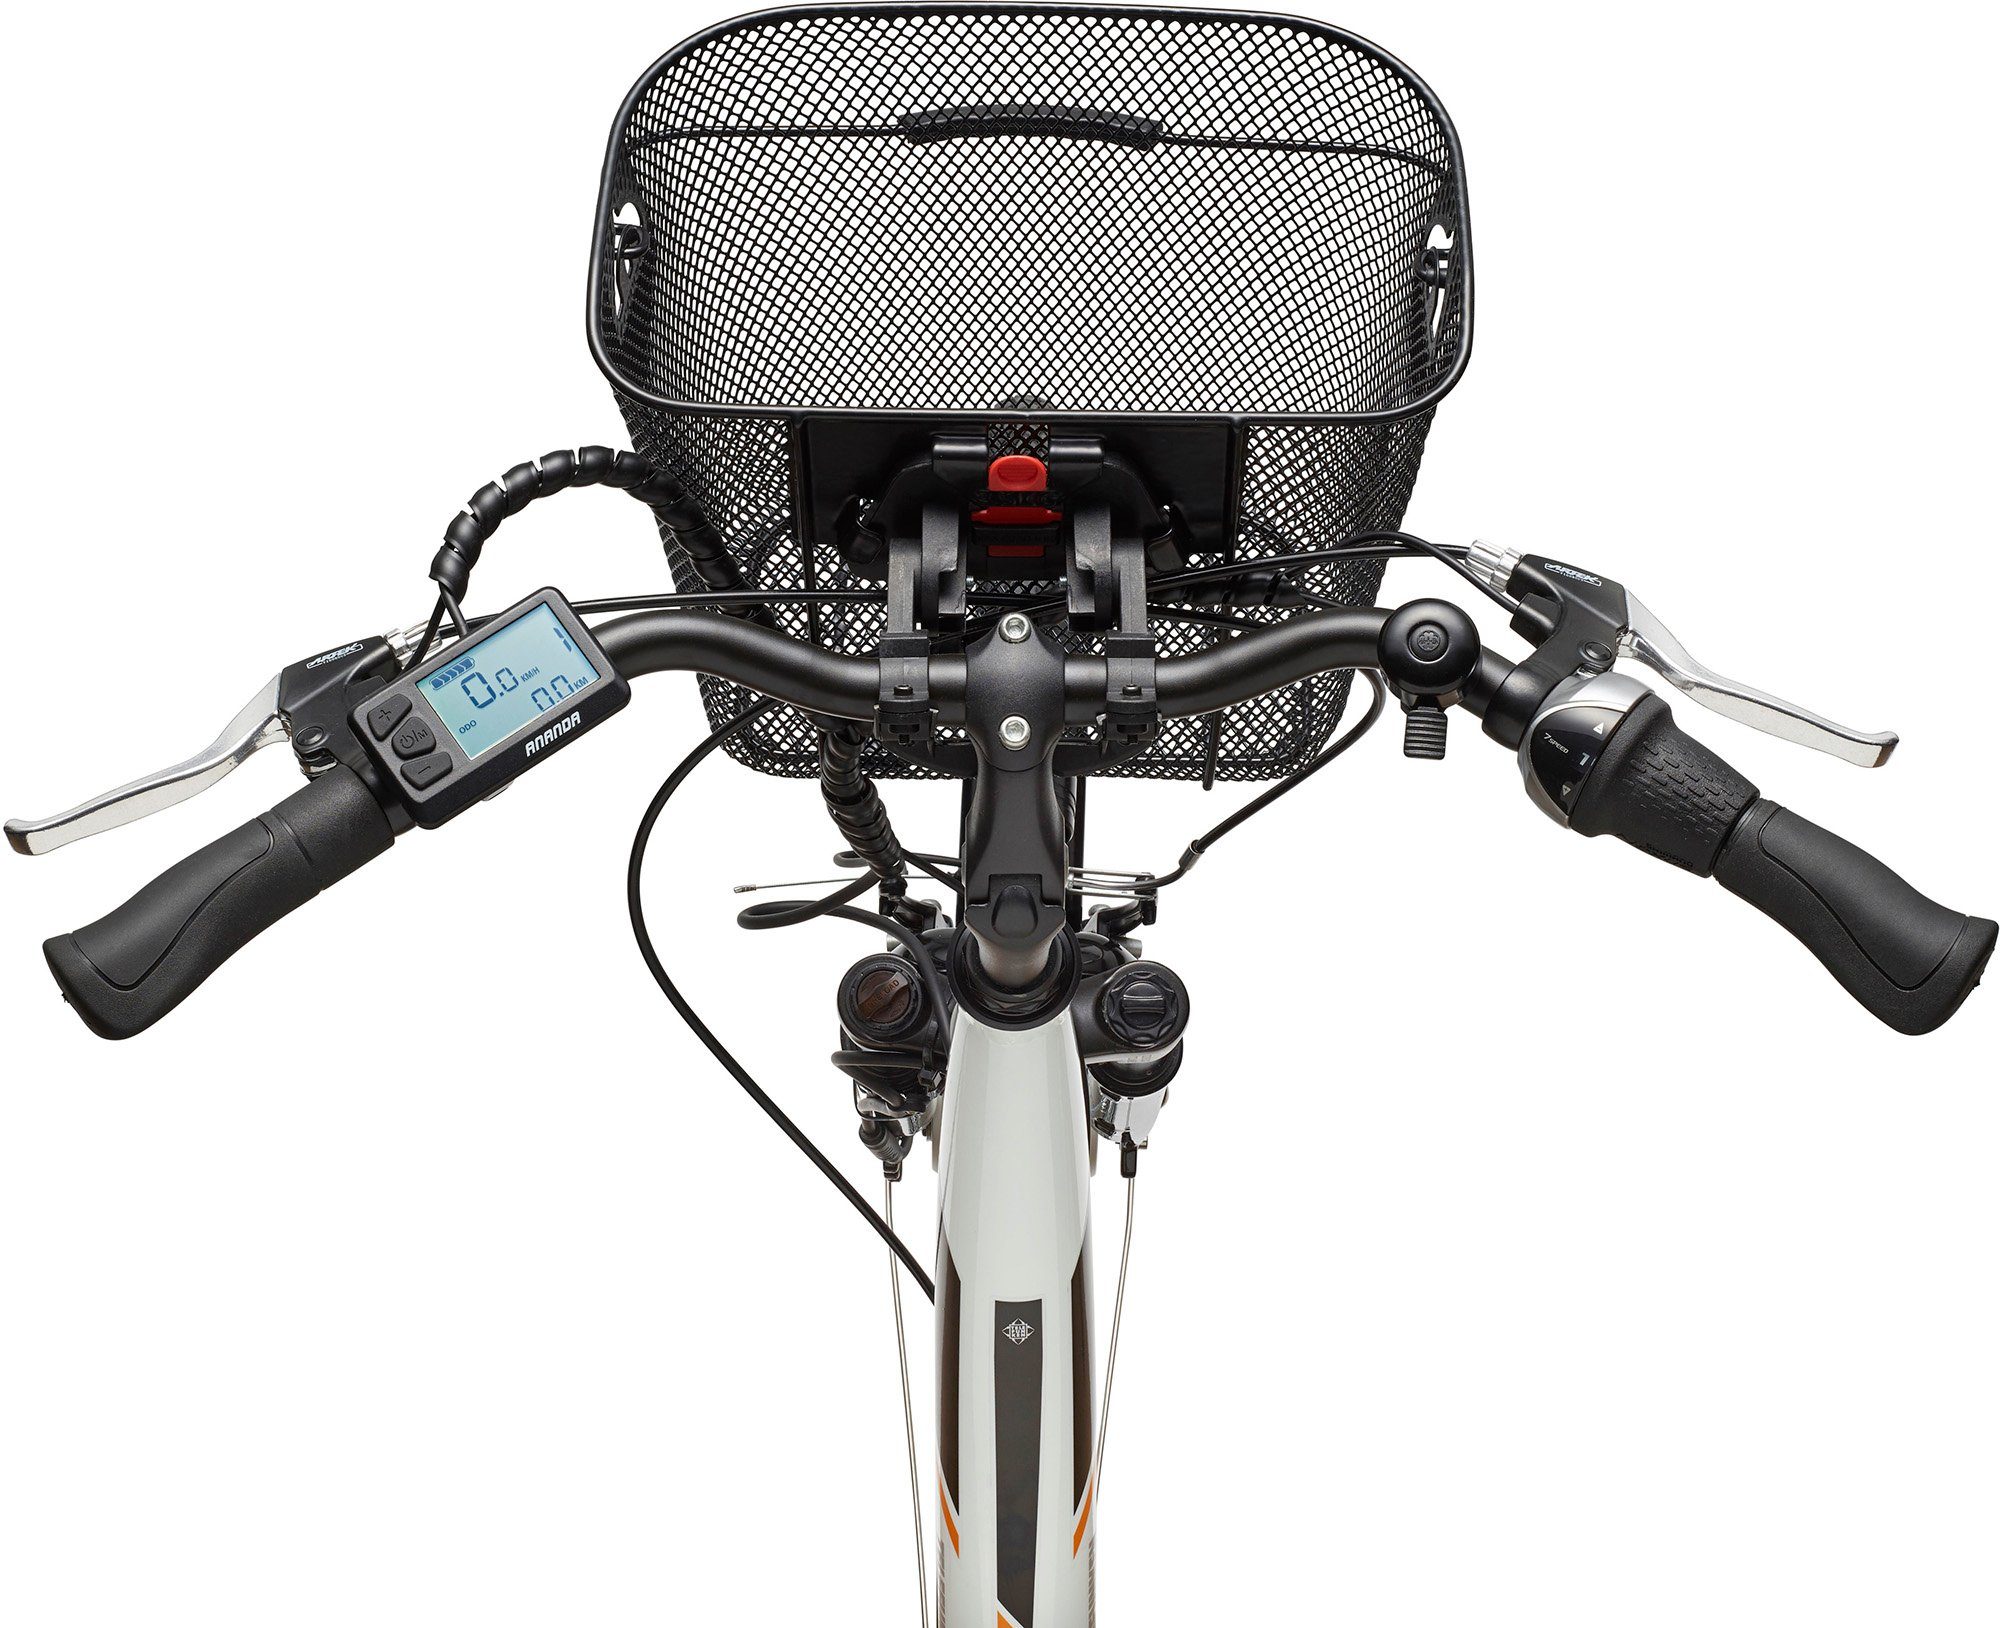 Telefunken E-Bike RC840, Wh Multitalent Frontmotor, Akku, mit Nexus Fahrradkorb 374,4 7 Shimano Gang Schaltwerk